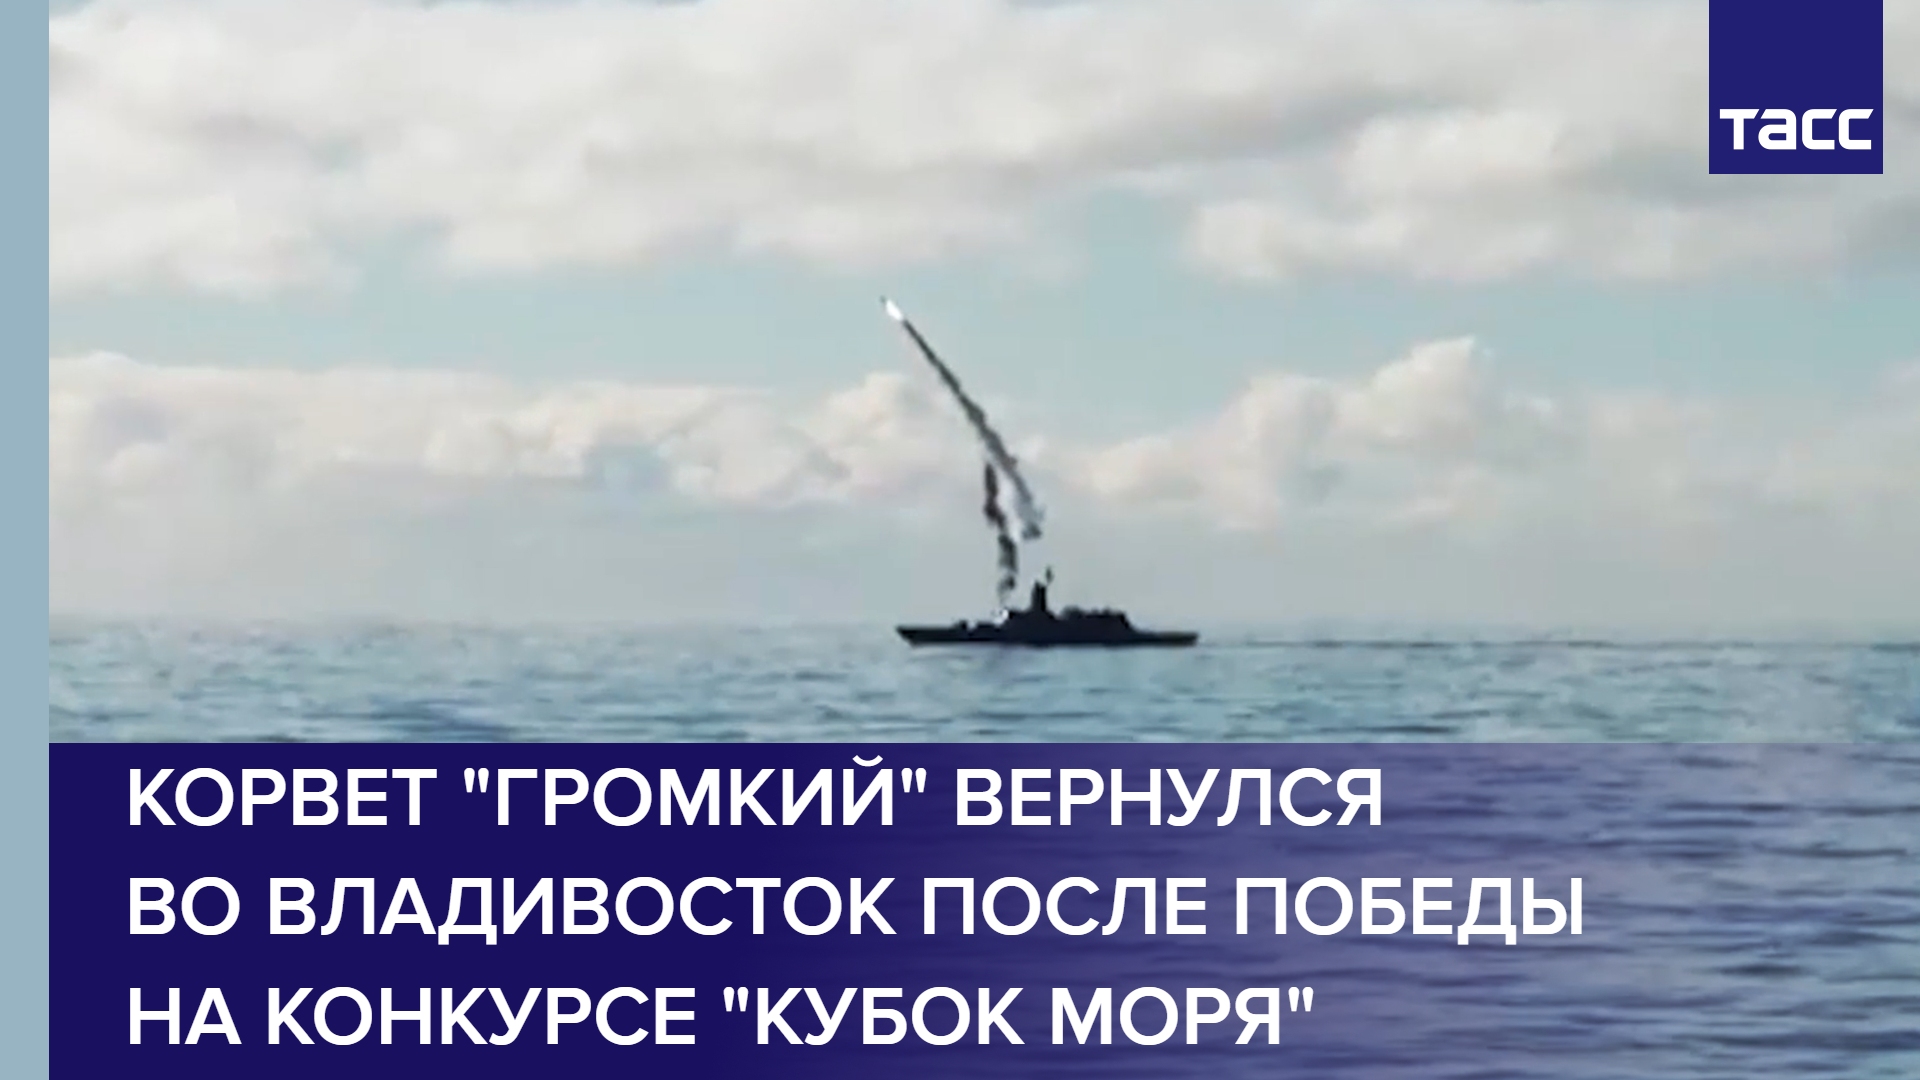 Корвет "Громкий" вернулся во Владивосток после победы на конкурсе "Кубок моря" в Китае